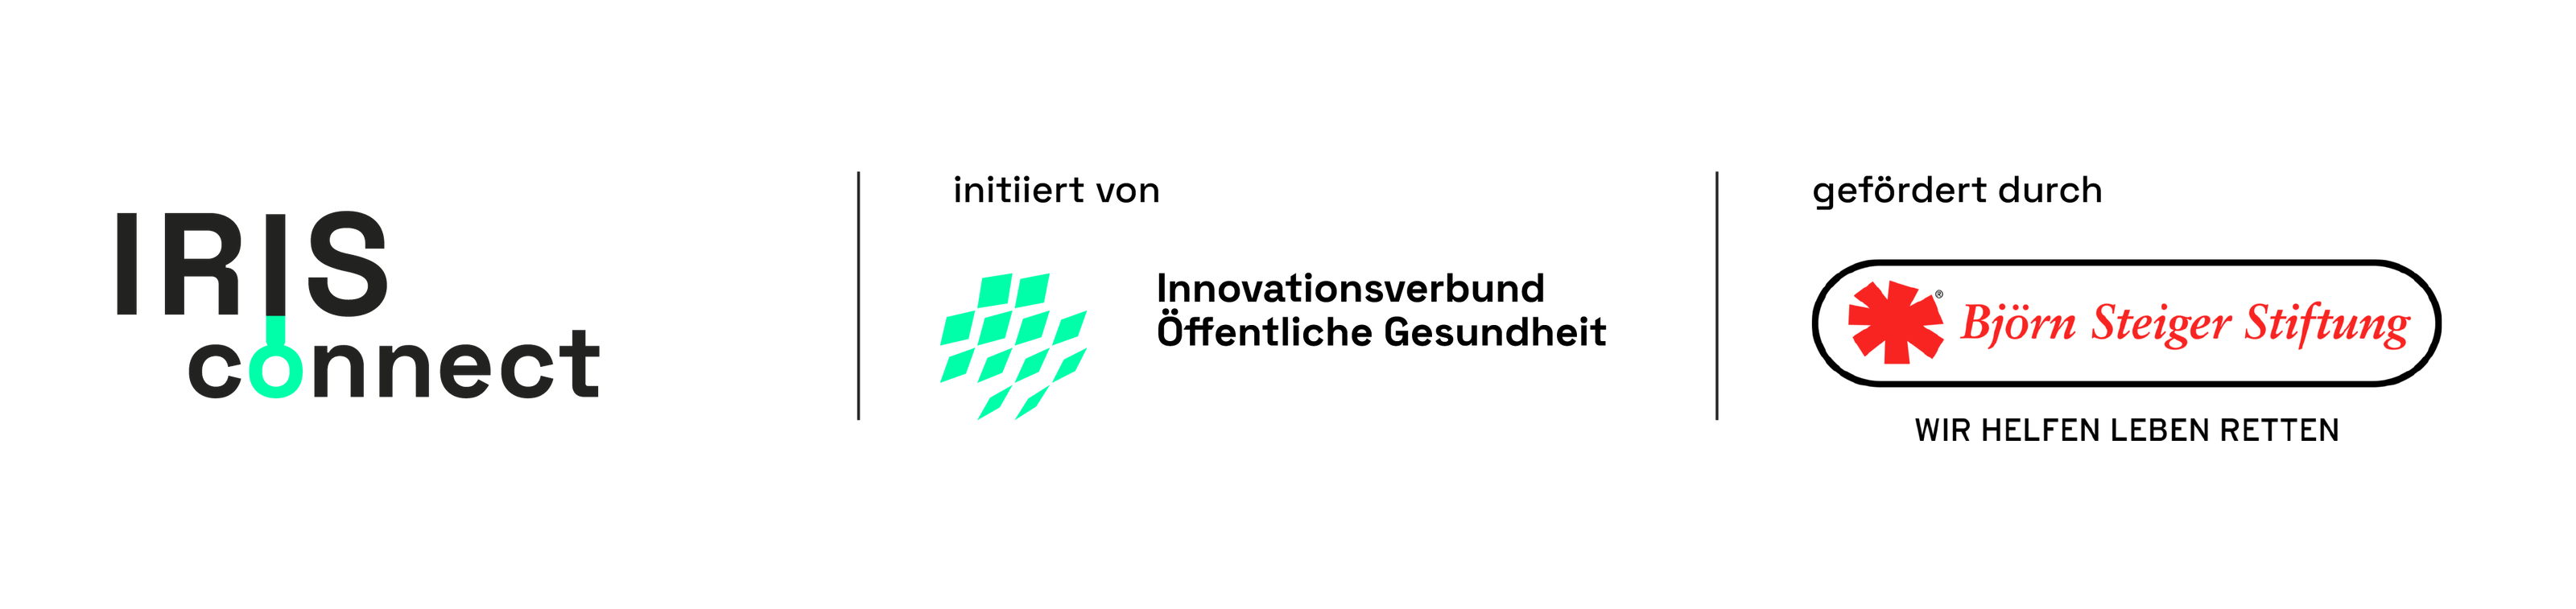 Partner von IRIS connect: Der Innovationsverbund Öffentliche Gesundheit und die Björn Steiger Stiftung